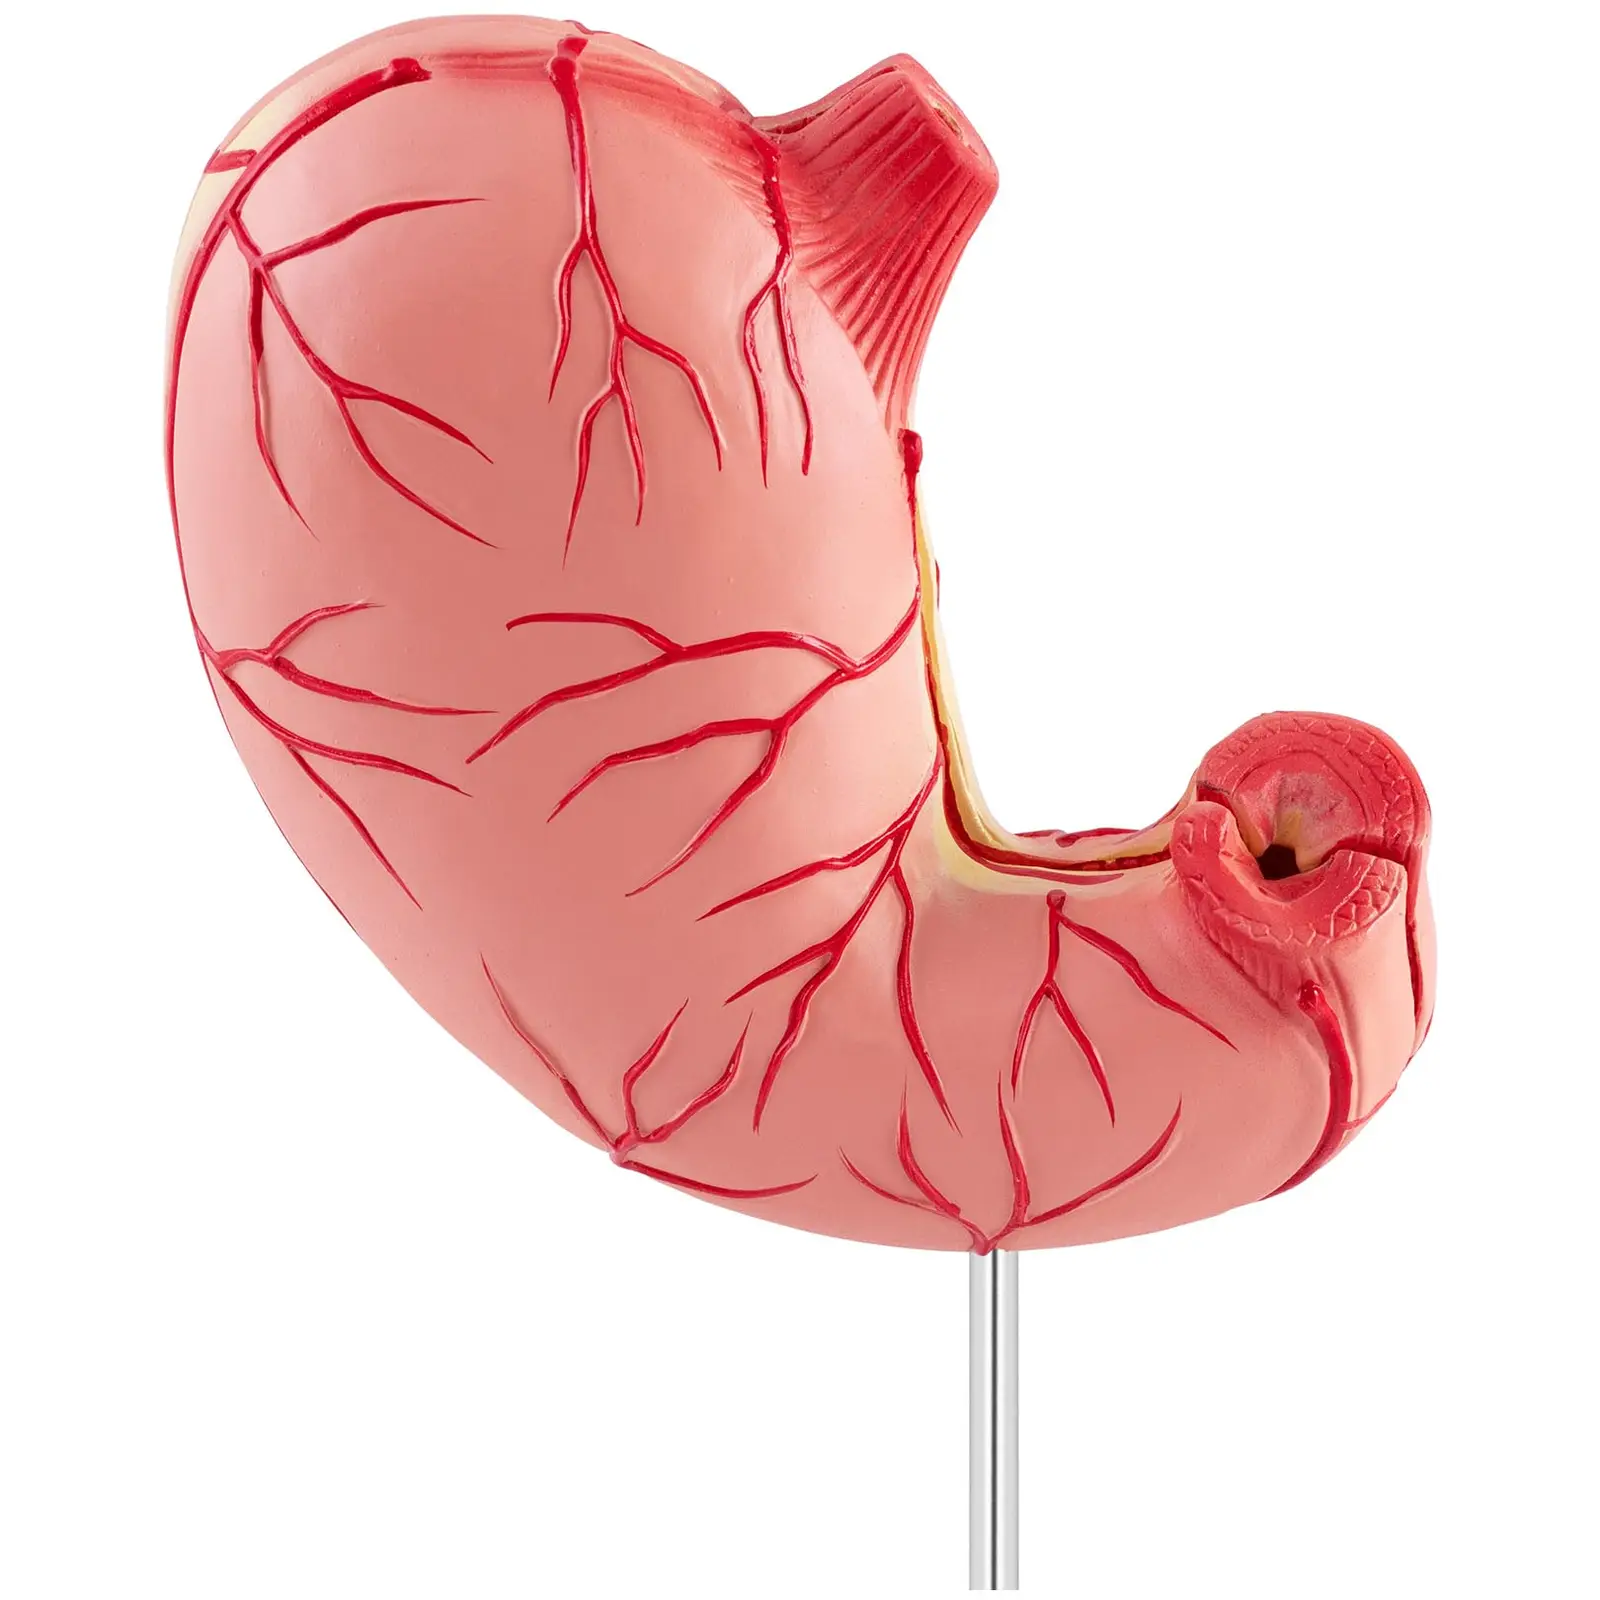 Modello anatomico stomaco - Divisibile in 2 parti - A grandezza naturale